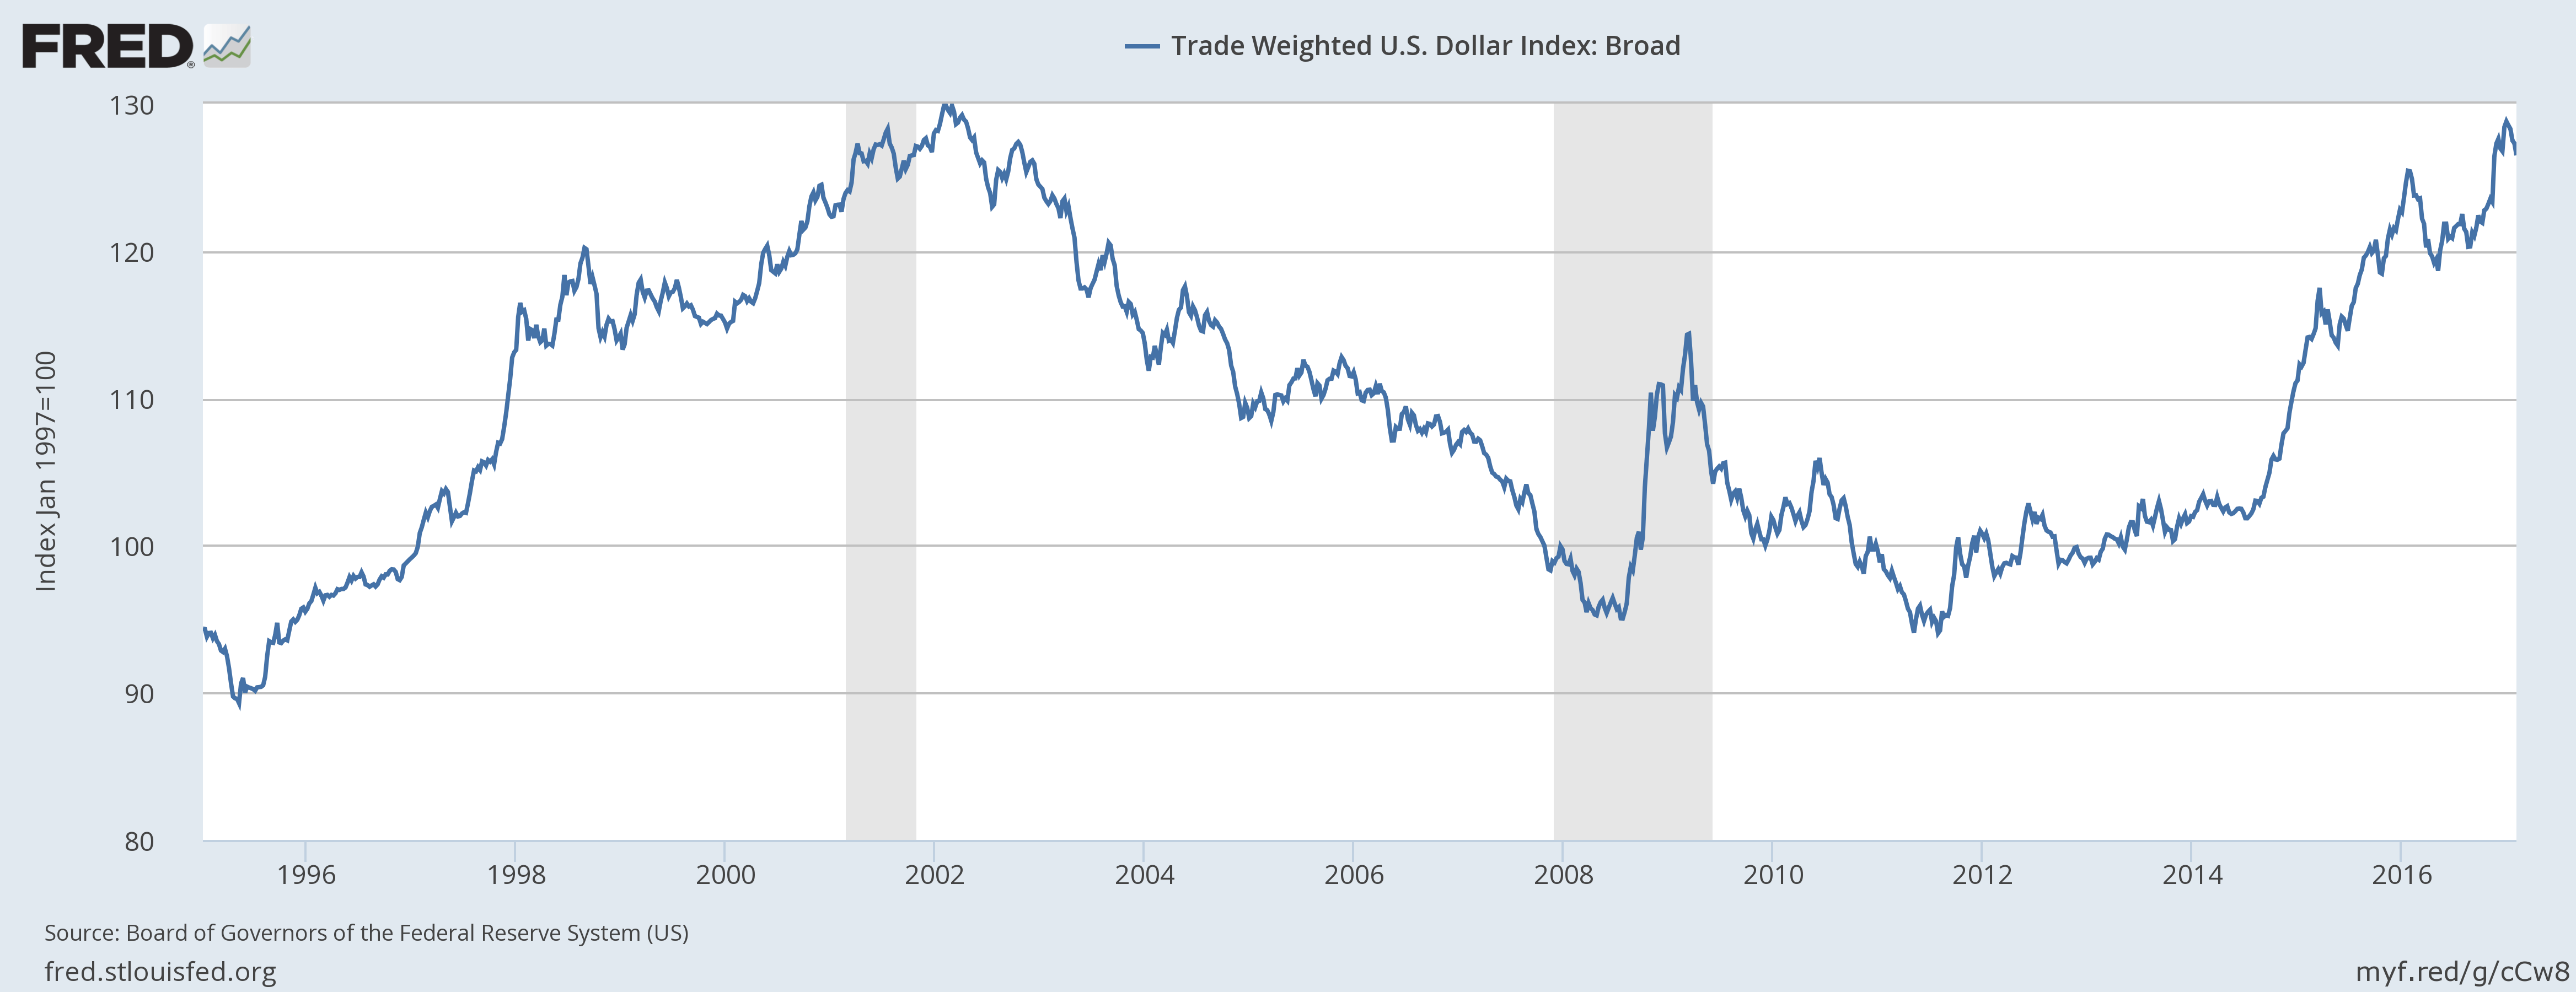 Data indeks dollar